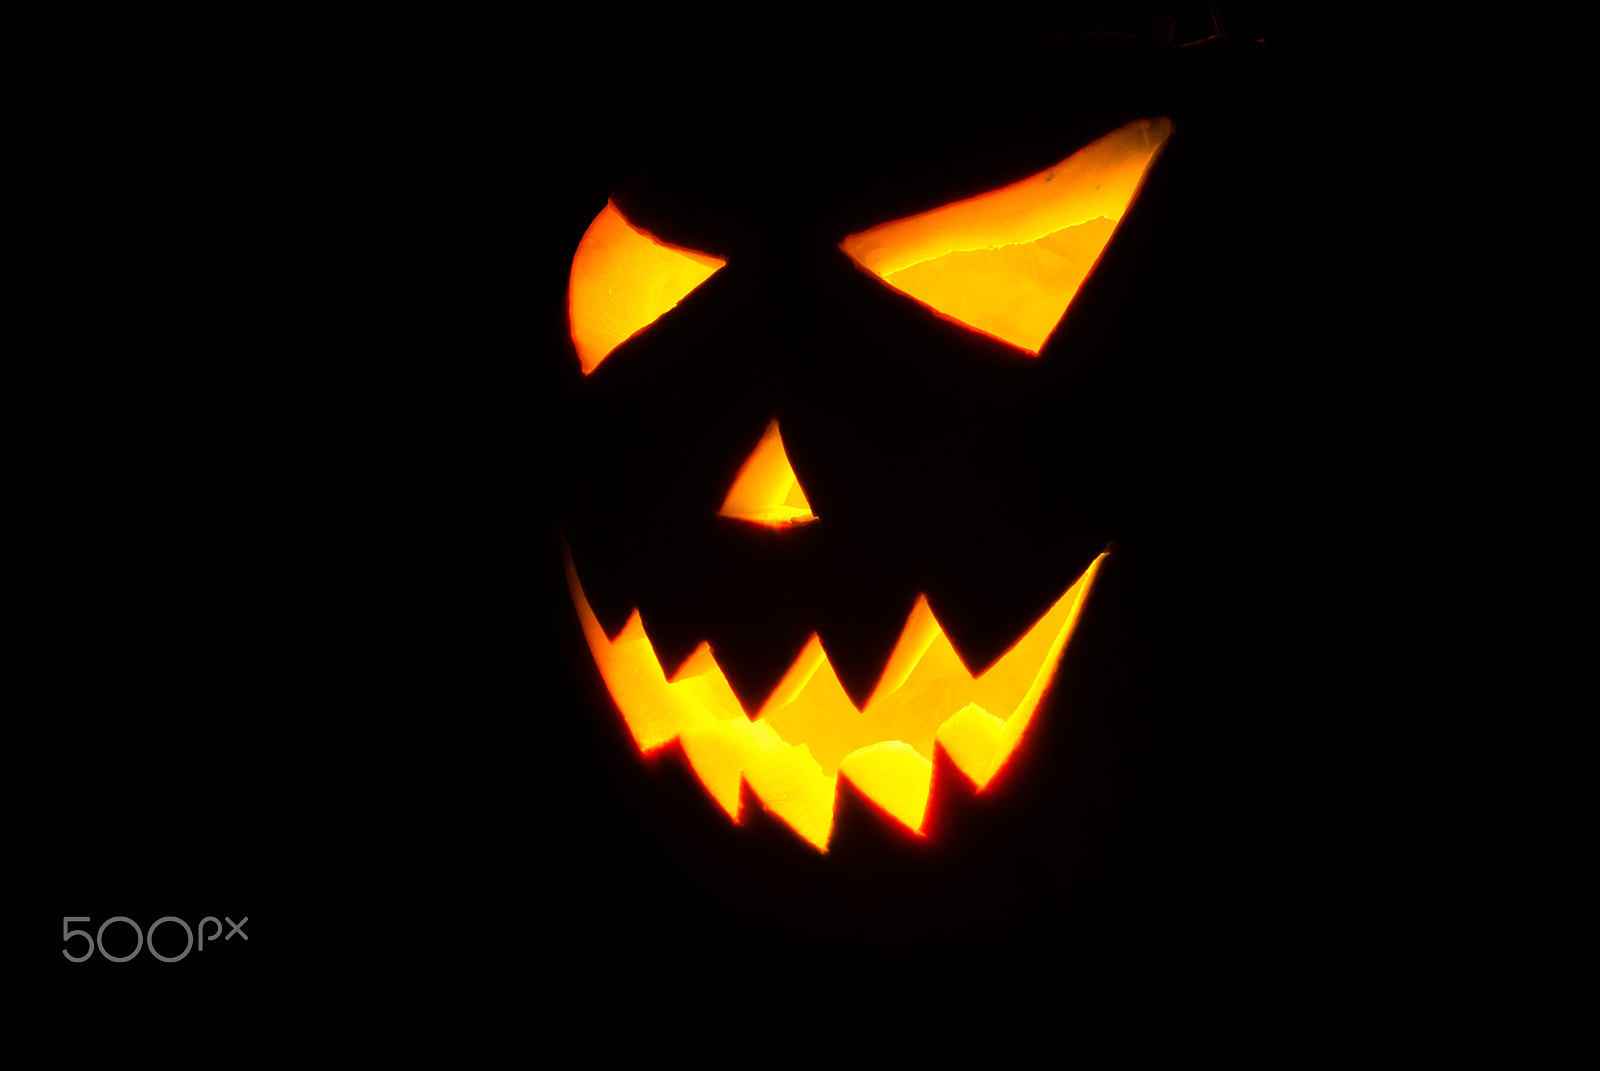 AF Nikkor 50mm f/1.8 N sample photo. Halloween jack-o-lantern on a black background, photography